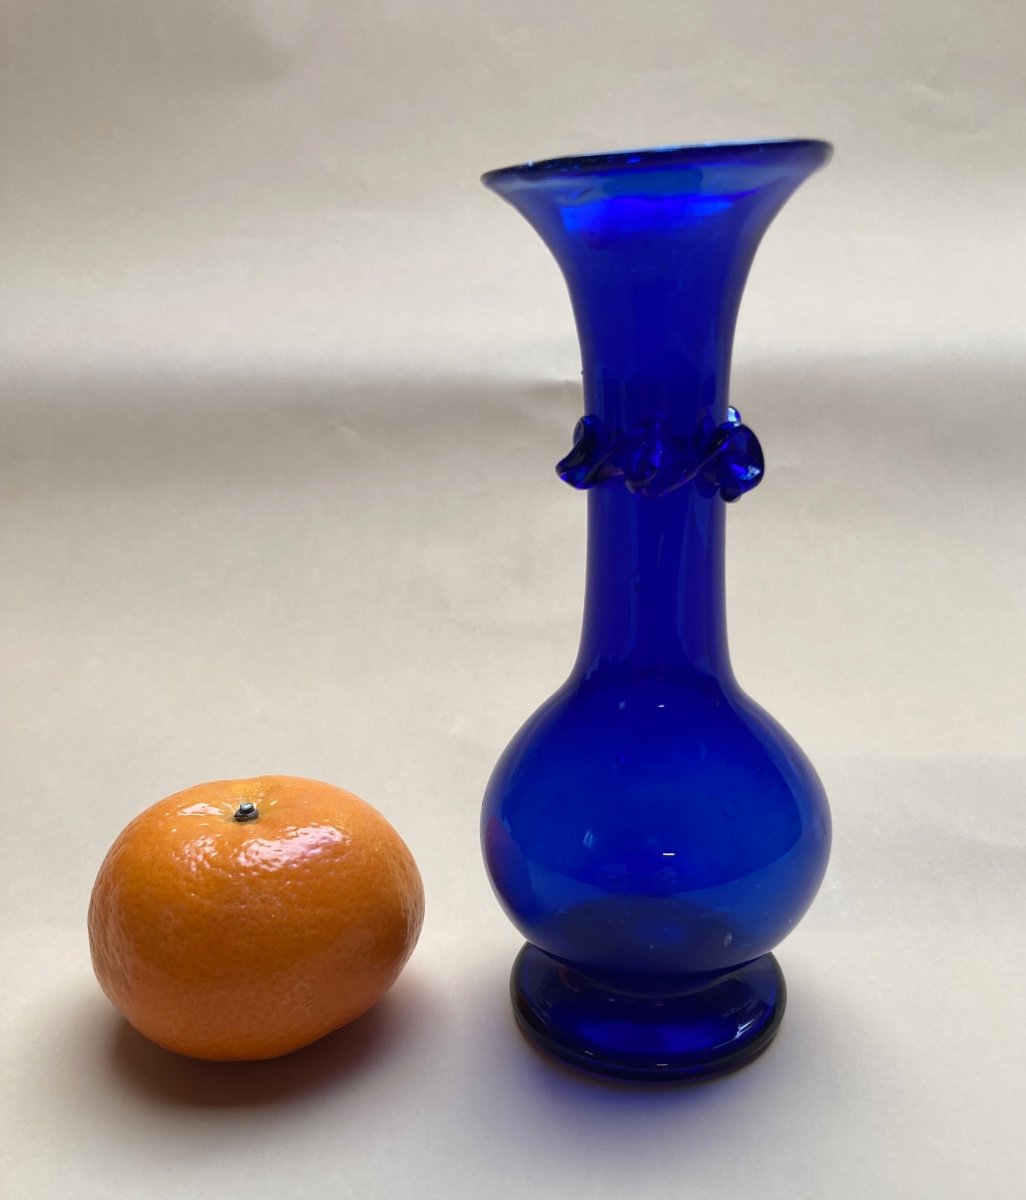 Small Soliflore Vase In Intense Blue Glass - Late 18th Century Glassware